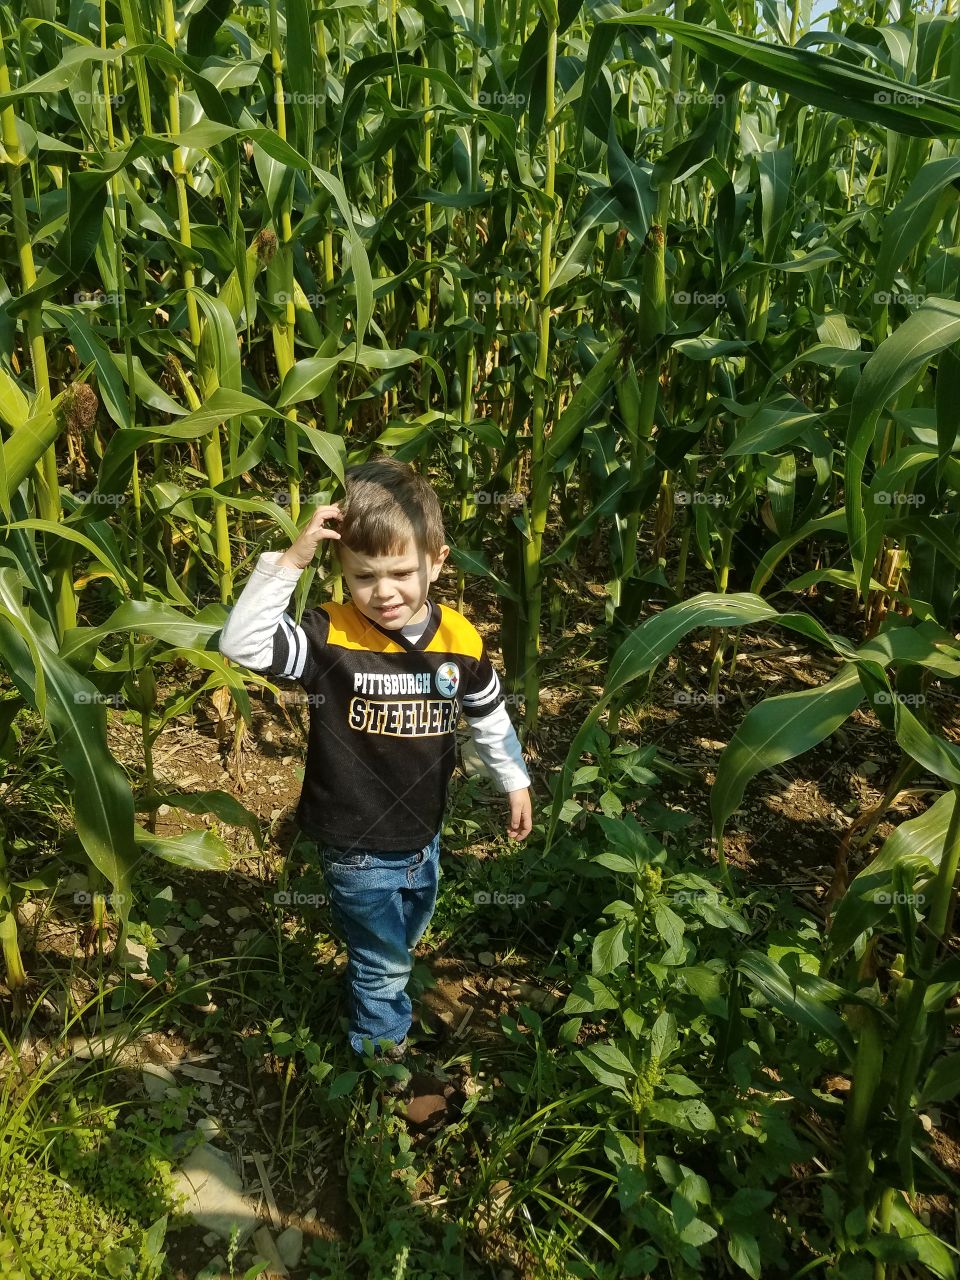 My boy in our corn field